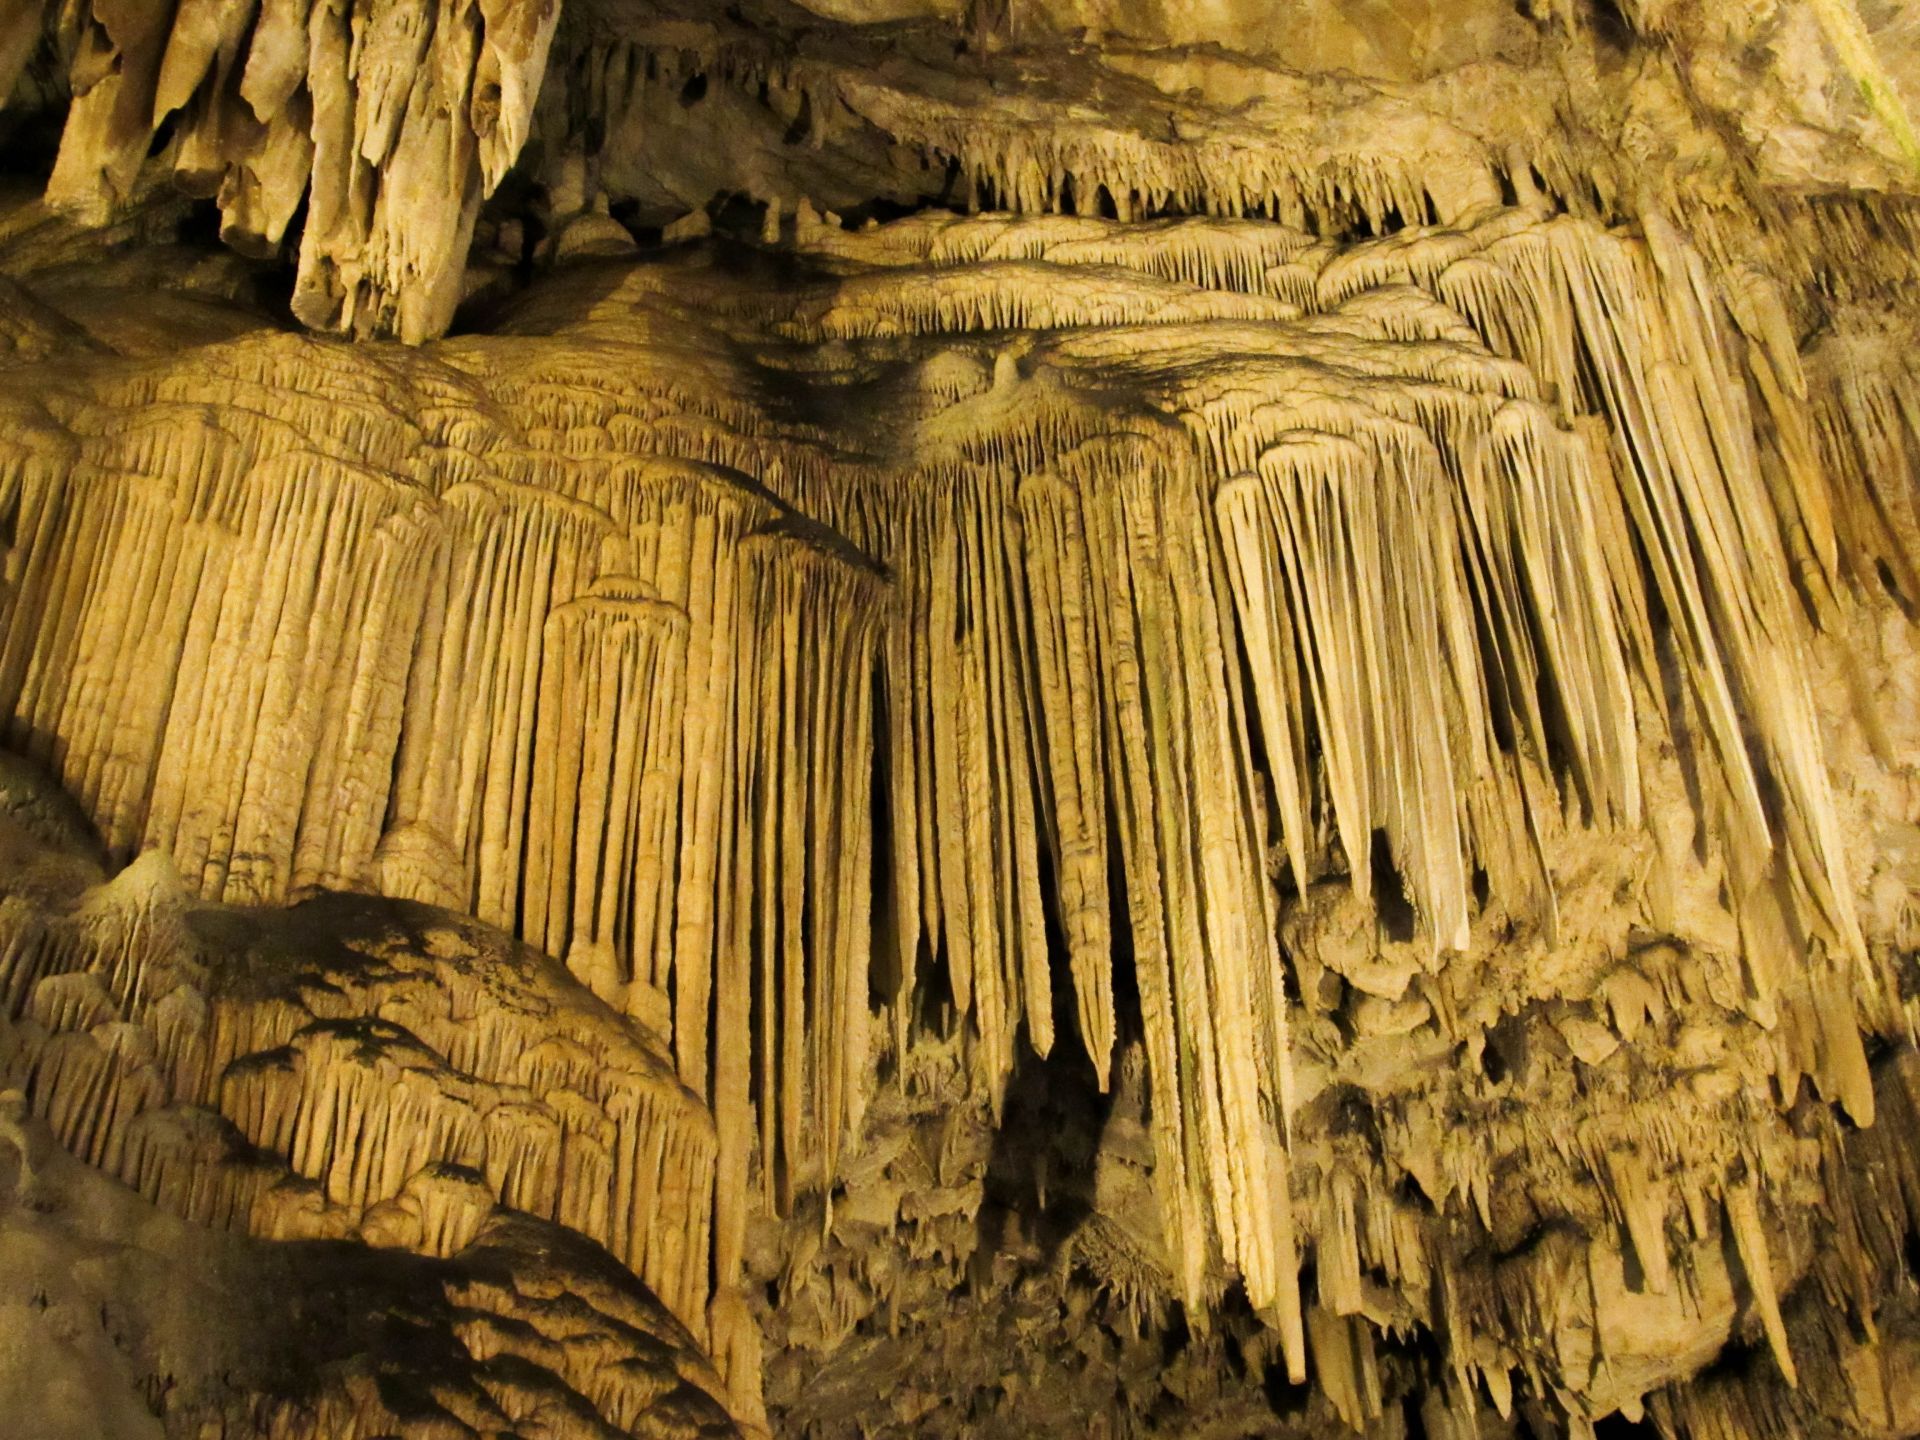 Antiparos island: Cave